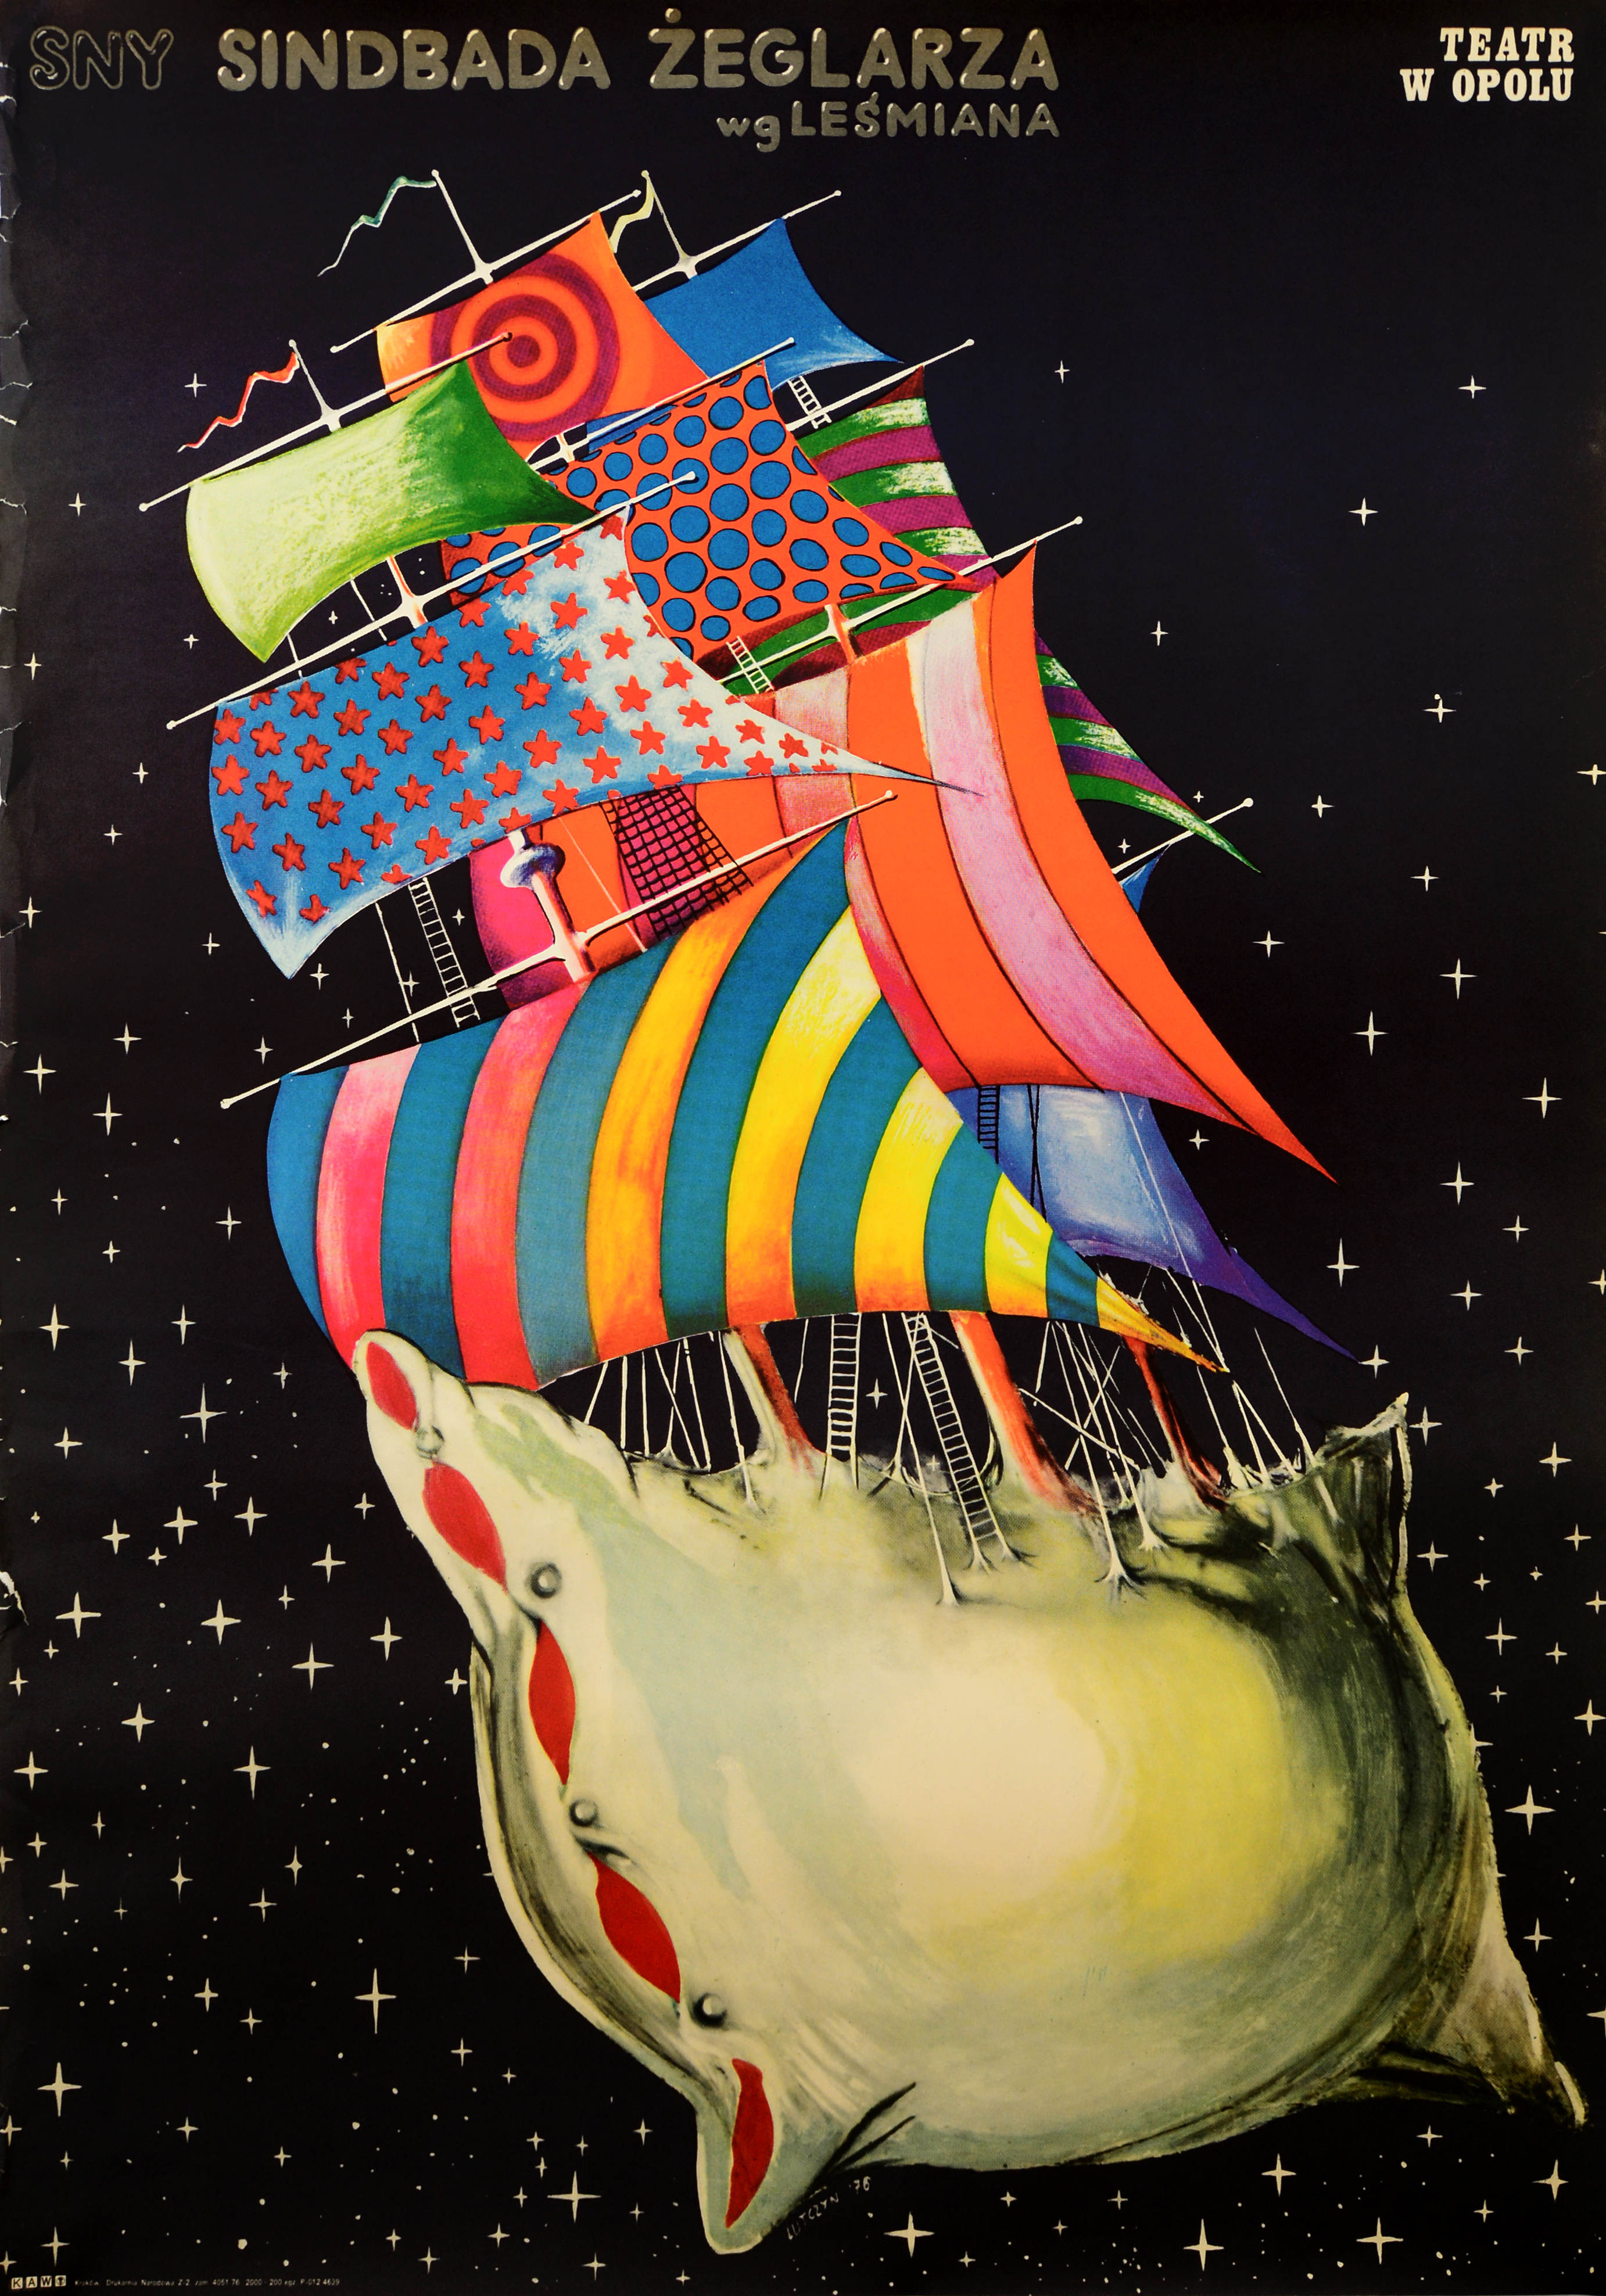 Sny Sindbada żeglarza, 1976